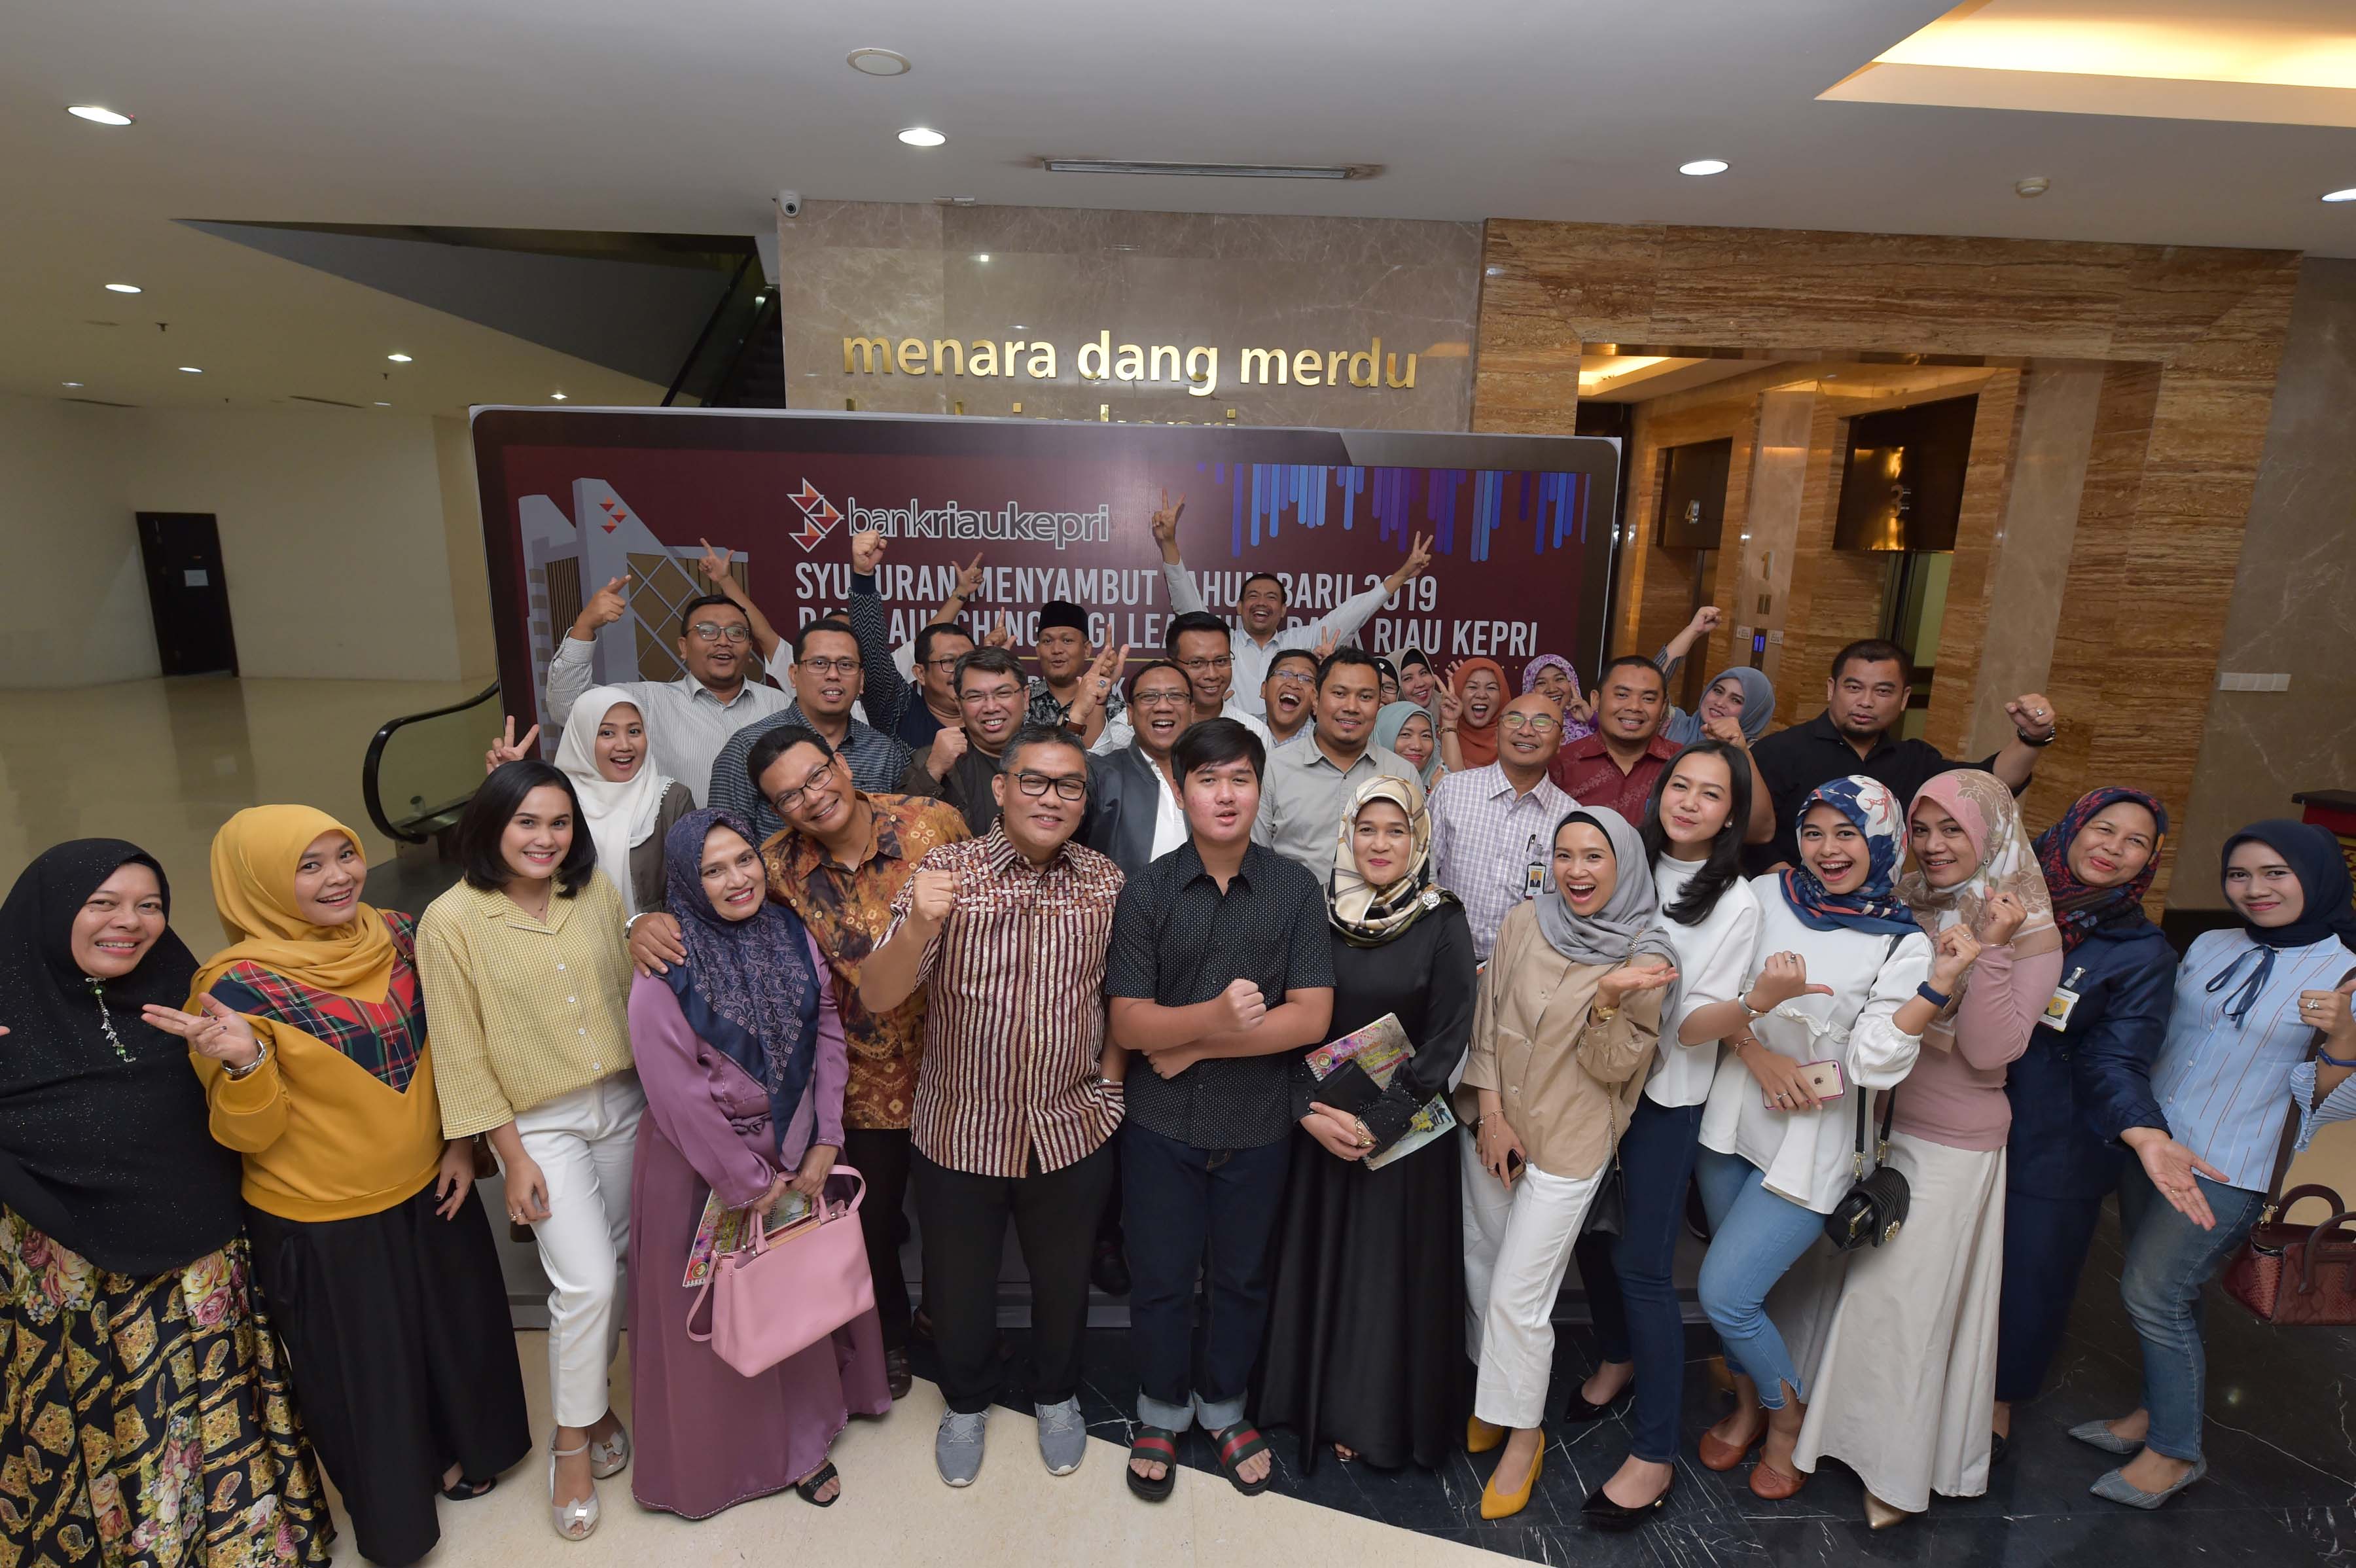 Digi Learning Bank Riau Kepri Resmi Diluncurkan